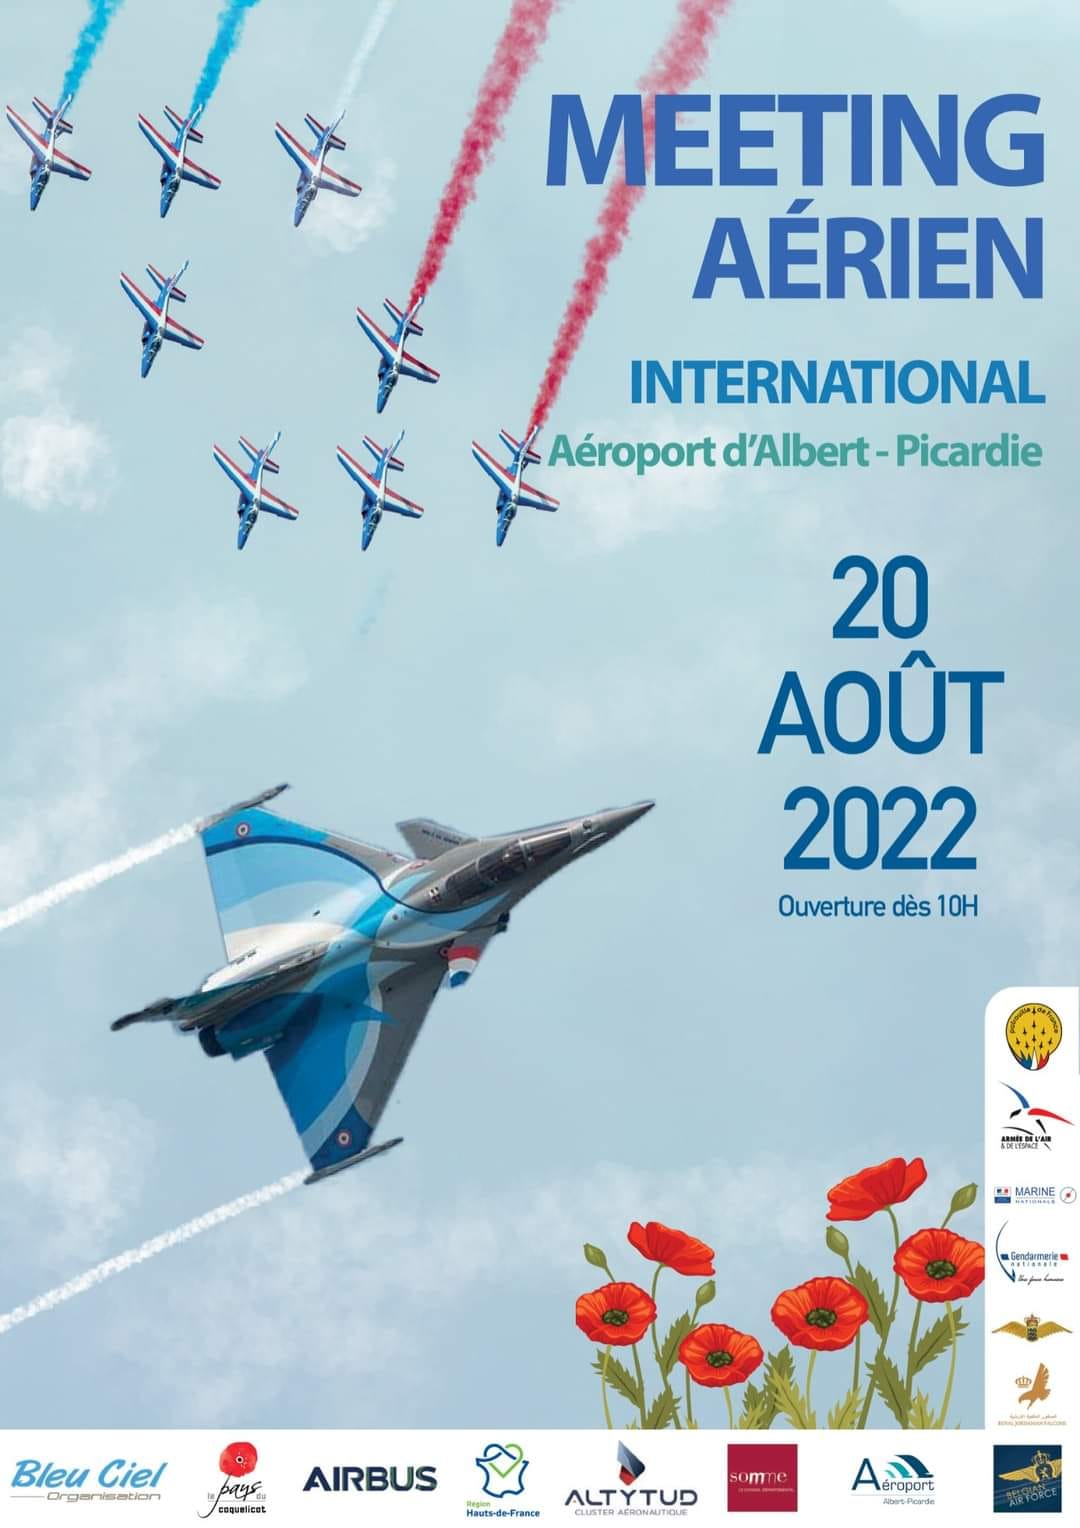  Meeting Aérien International de la Somme Aérodrome d'Albert Picardie 2022